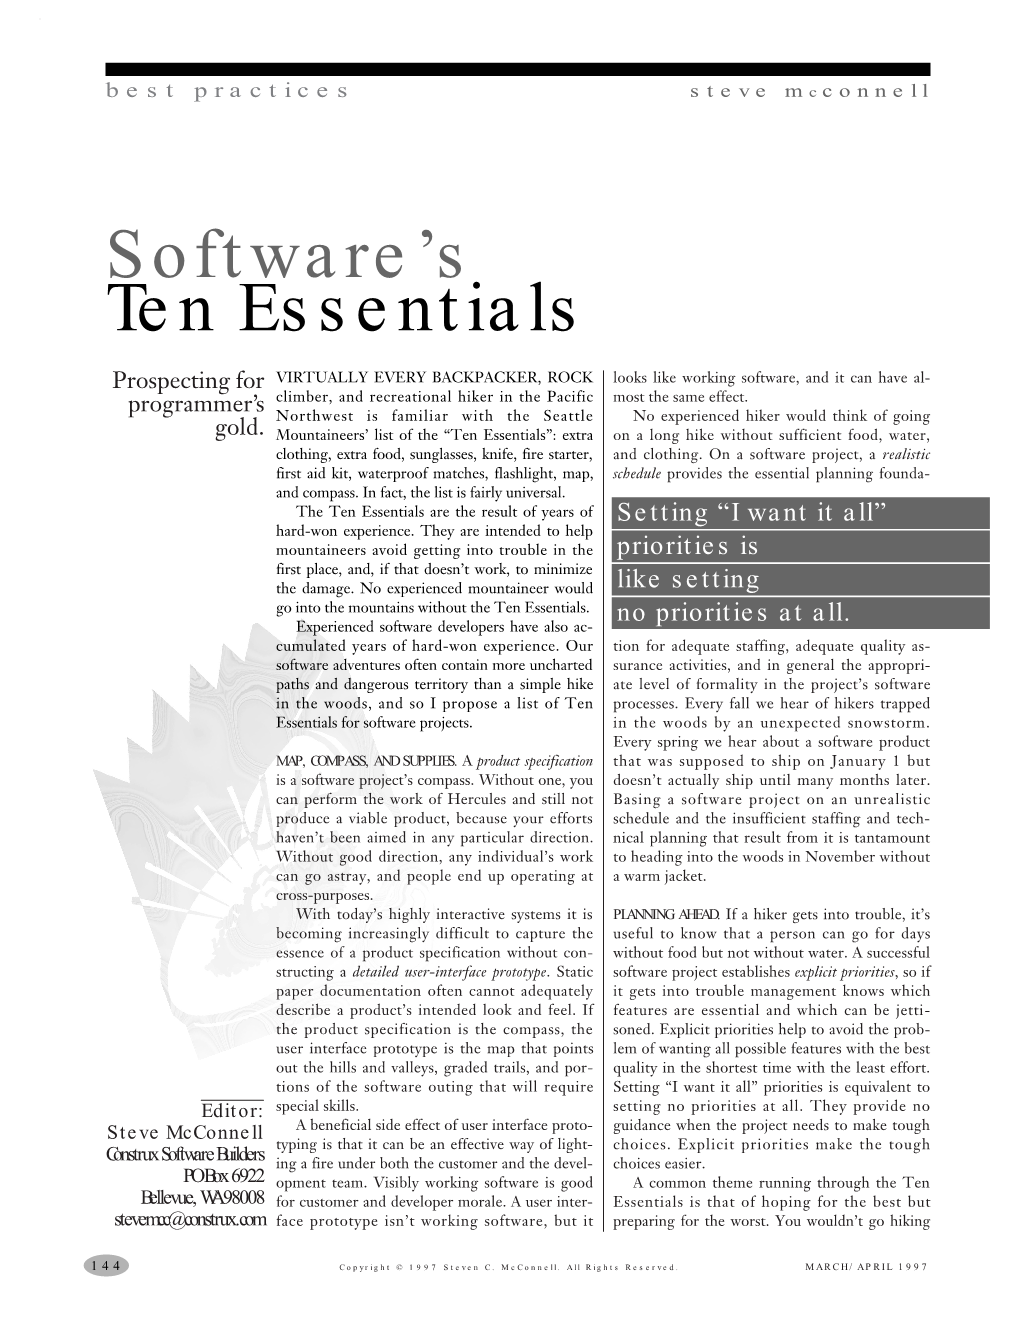 Software's Ten Essentials